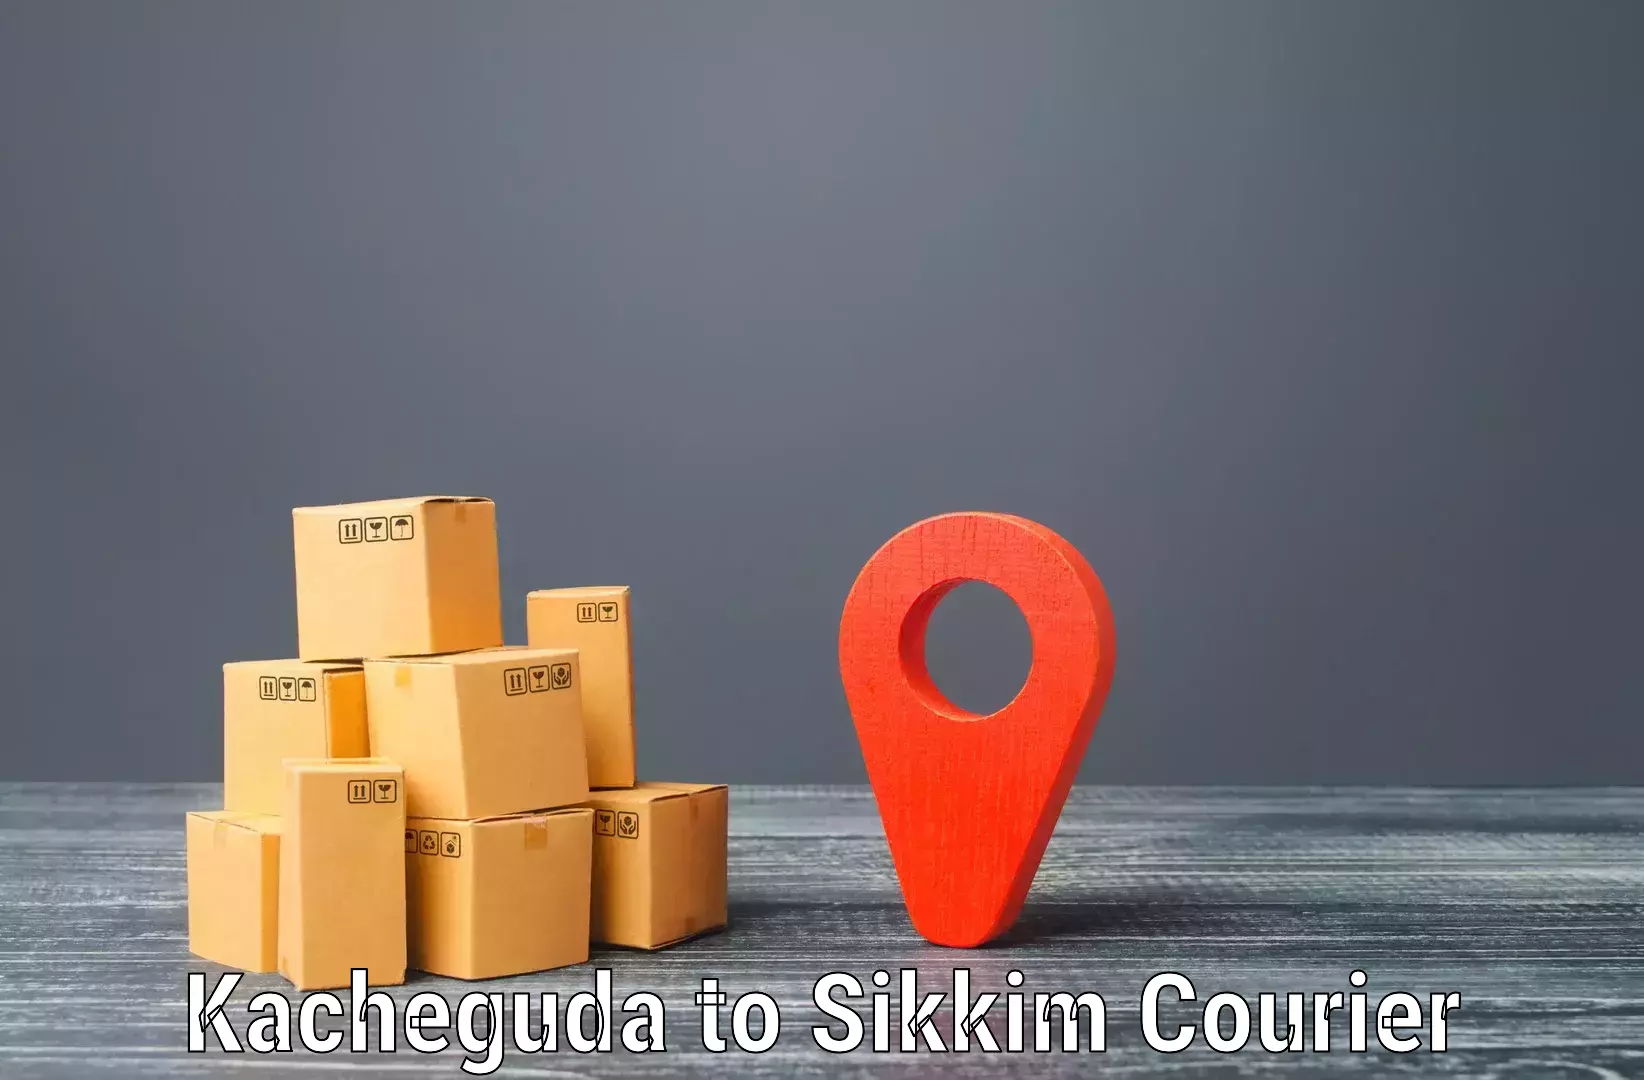 Door-to-door shipment in Kacheguda to South Sikkim